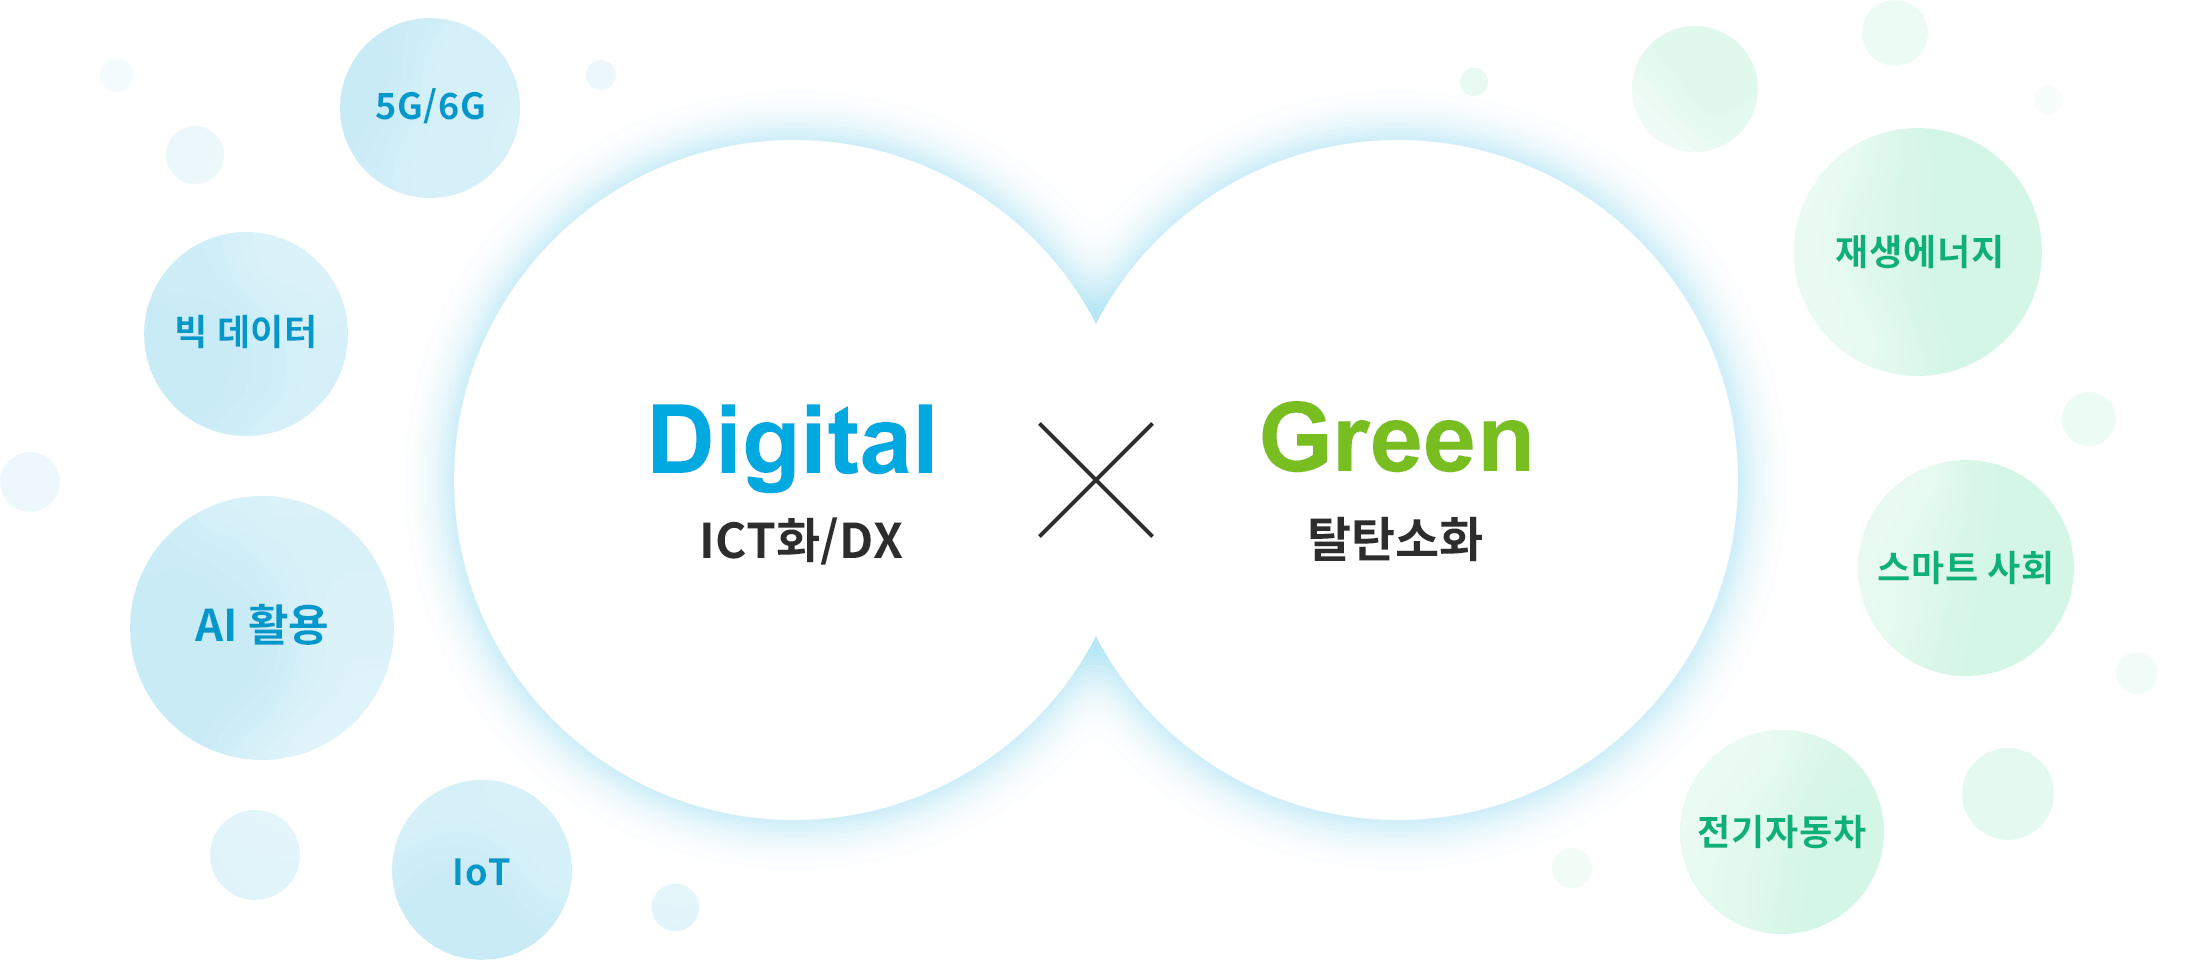 디지털×그린을 이미지화한 그림. Digital이란 ICT화/DX. 예를 들면 5G/6G, 빅데이터, AI 활용, Iot. Green이란 탈탄소화. 예를 들면 재생 에너지, 스마트 사회, 전기자동차.